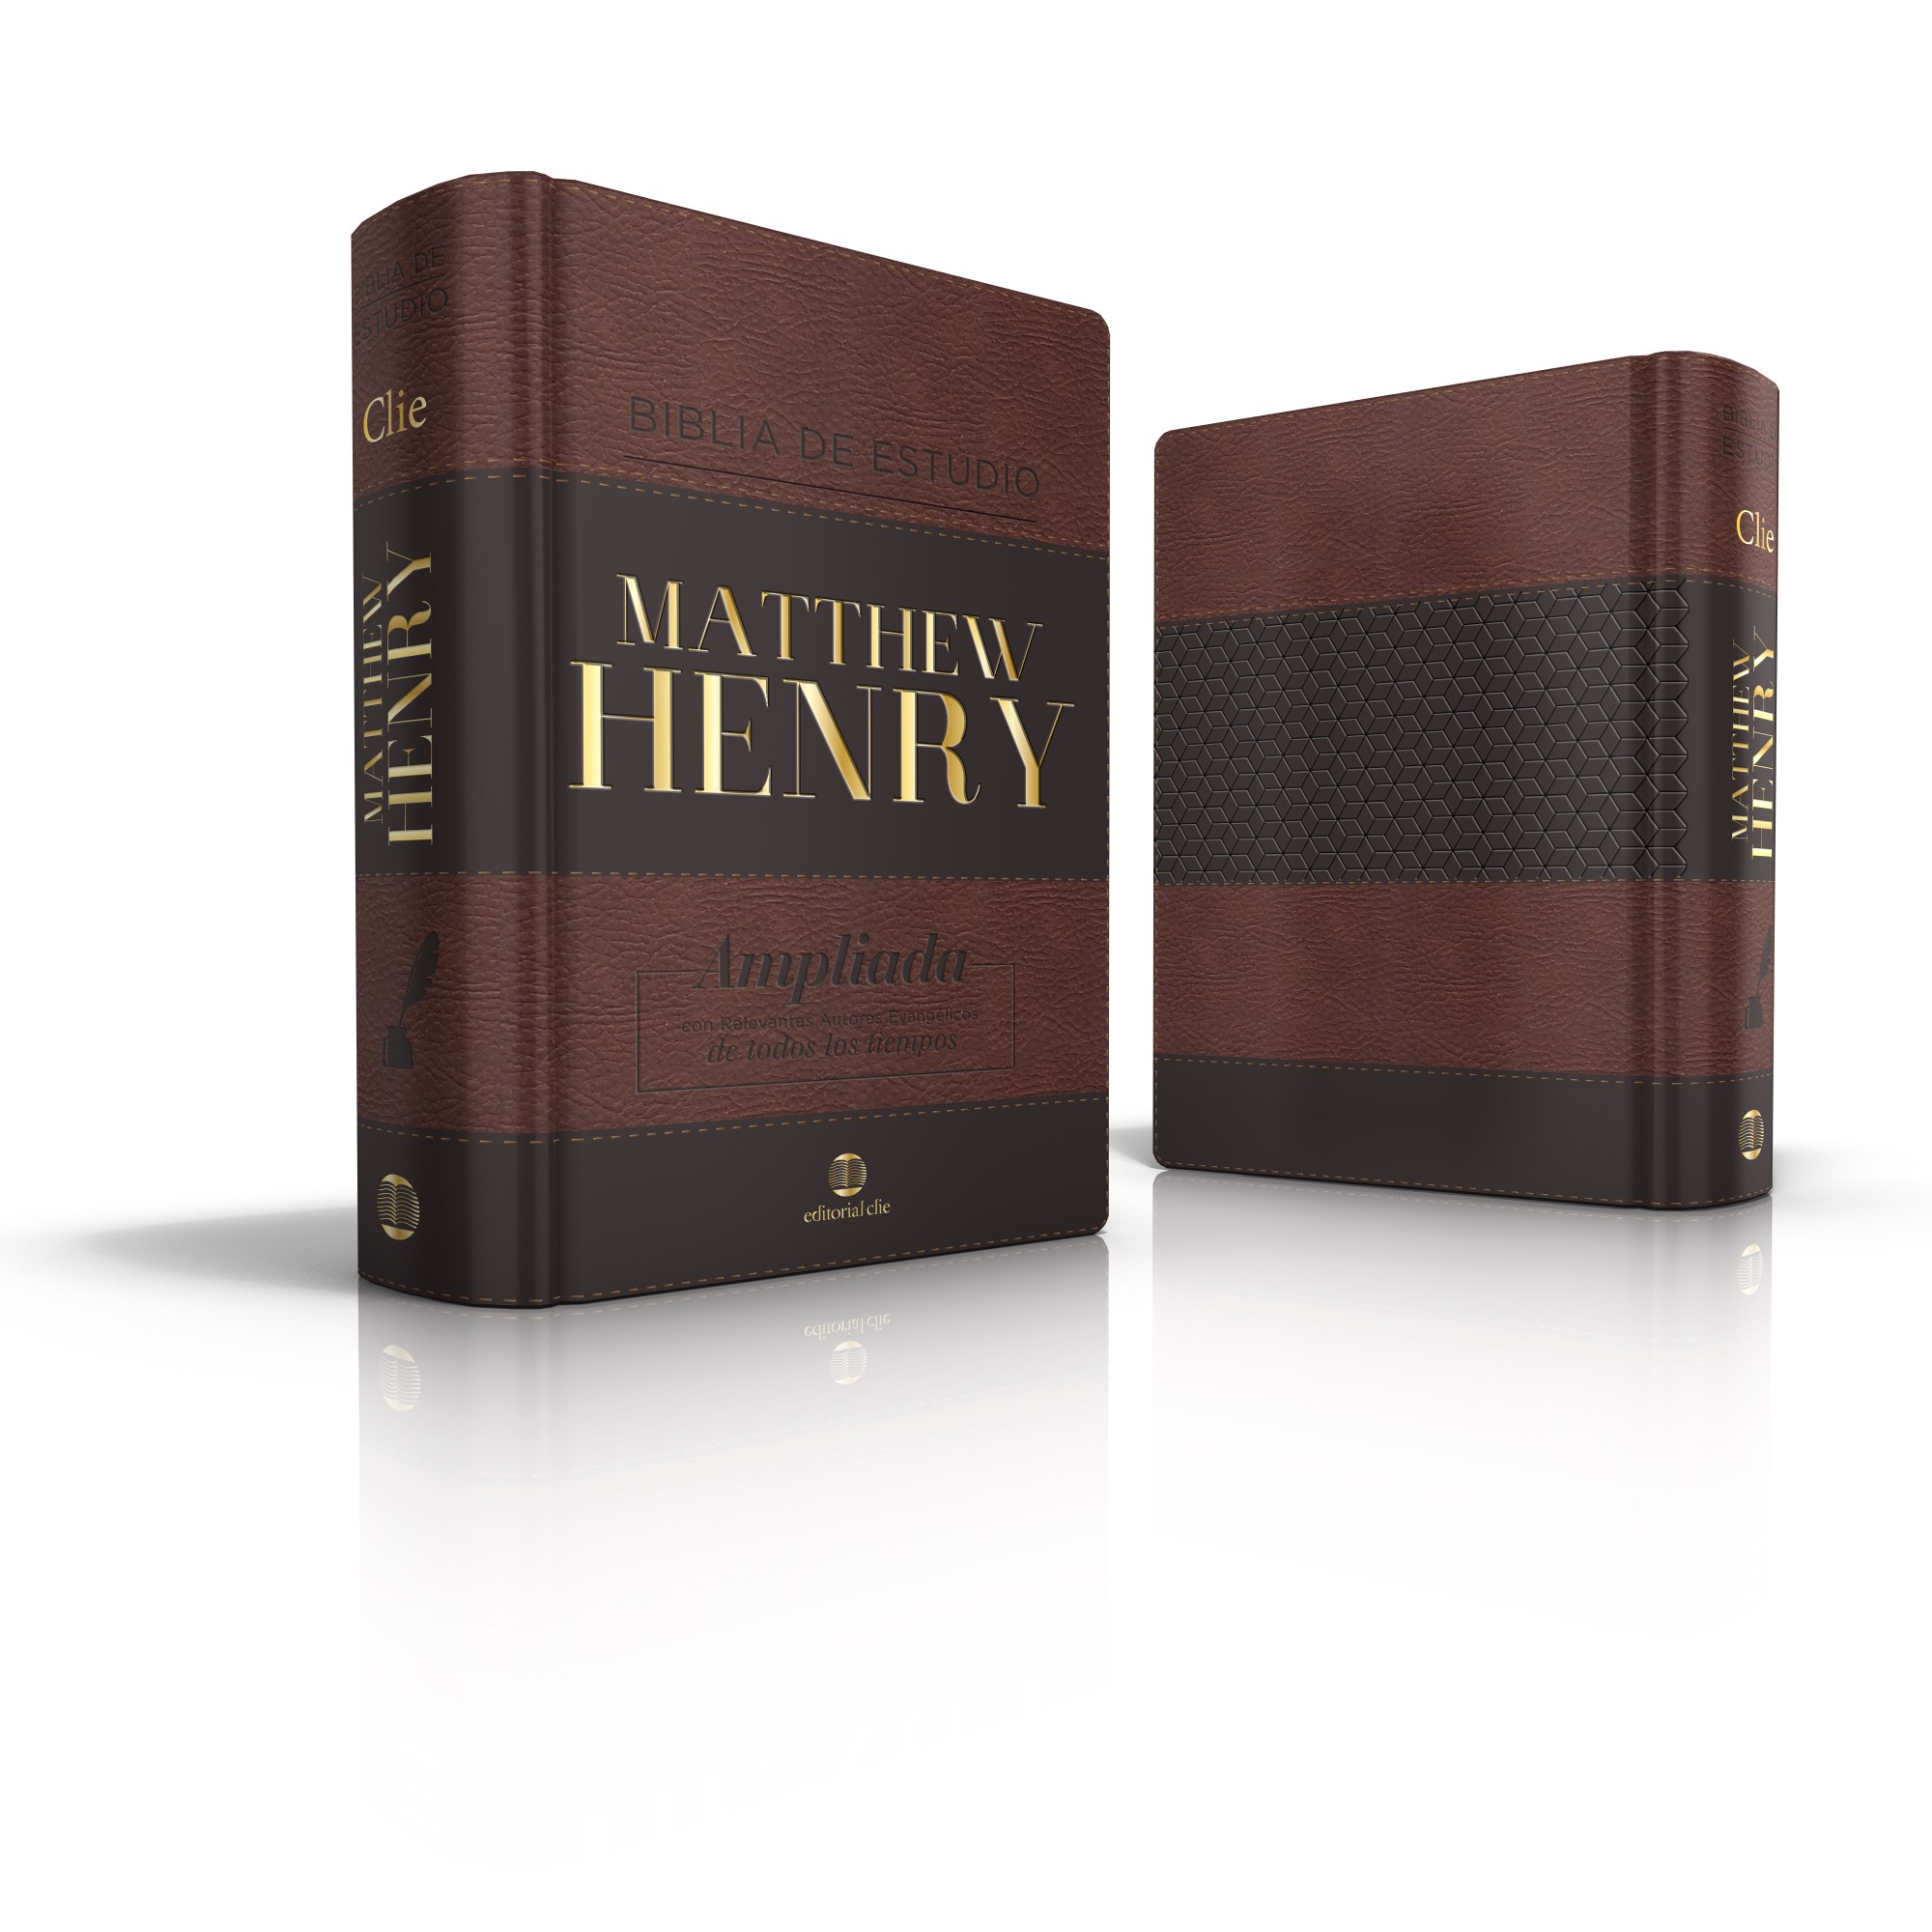 Biblia de estudio Matthew Henry/ LEATHERSOFT CLÁSICA/ CON ÍNDICE: Ampliada con relevantes autores evangélicos de todos los tiempos